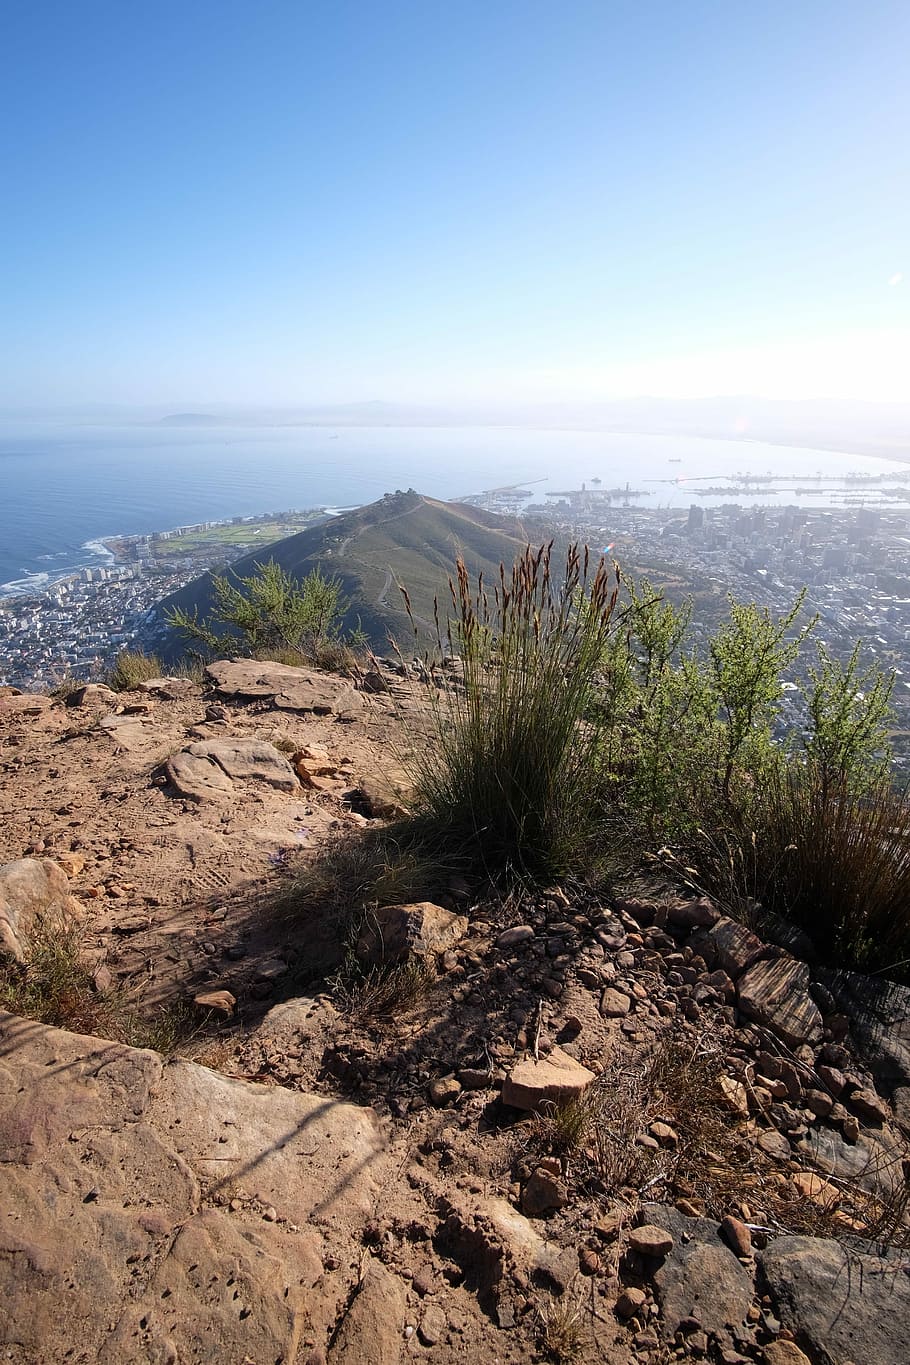 Cidade do Cabo, Signal Hill, Table Bay, porto da cidade do cabo, paisagens, natureza, cena tranquila, tranquilidade, paisagem, ninguém